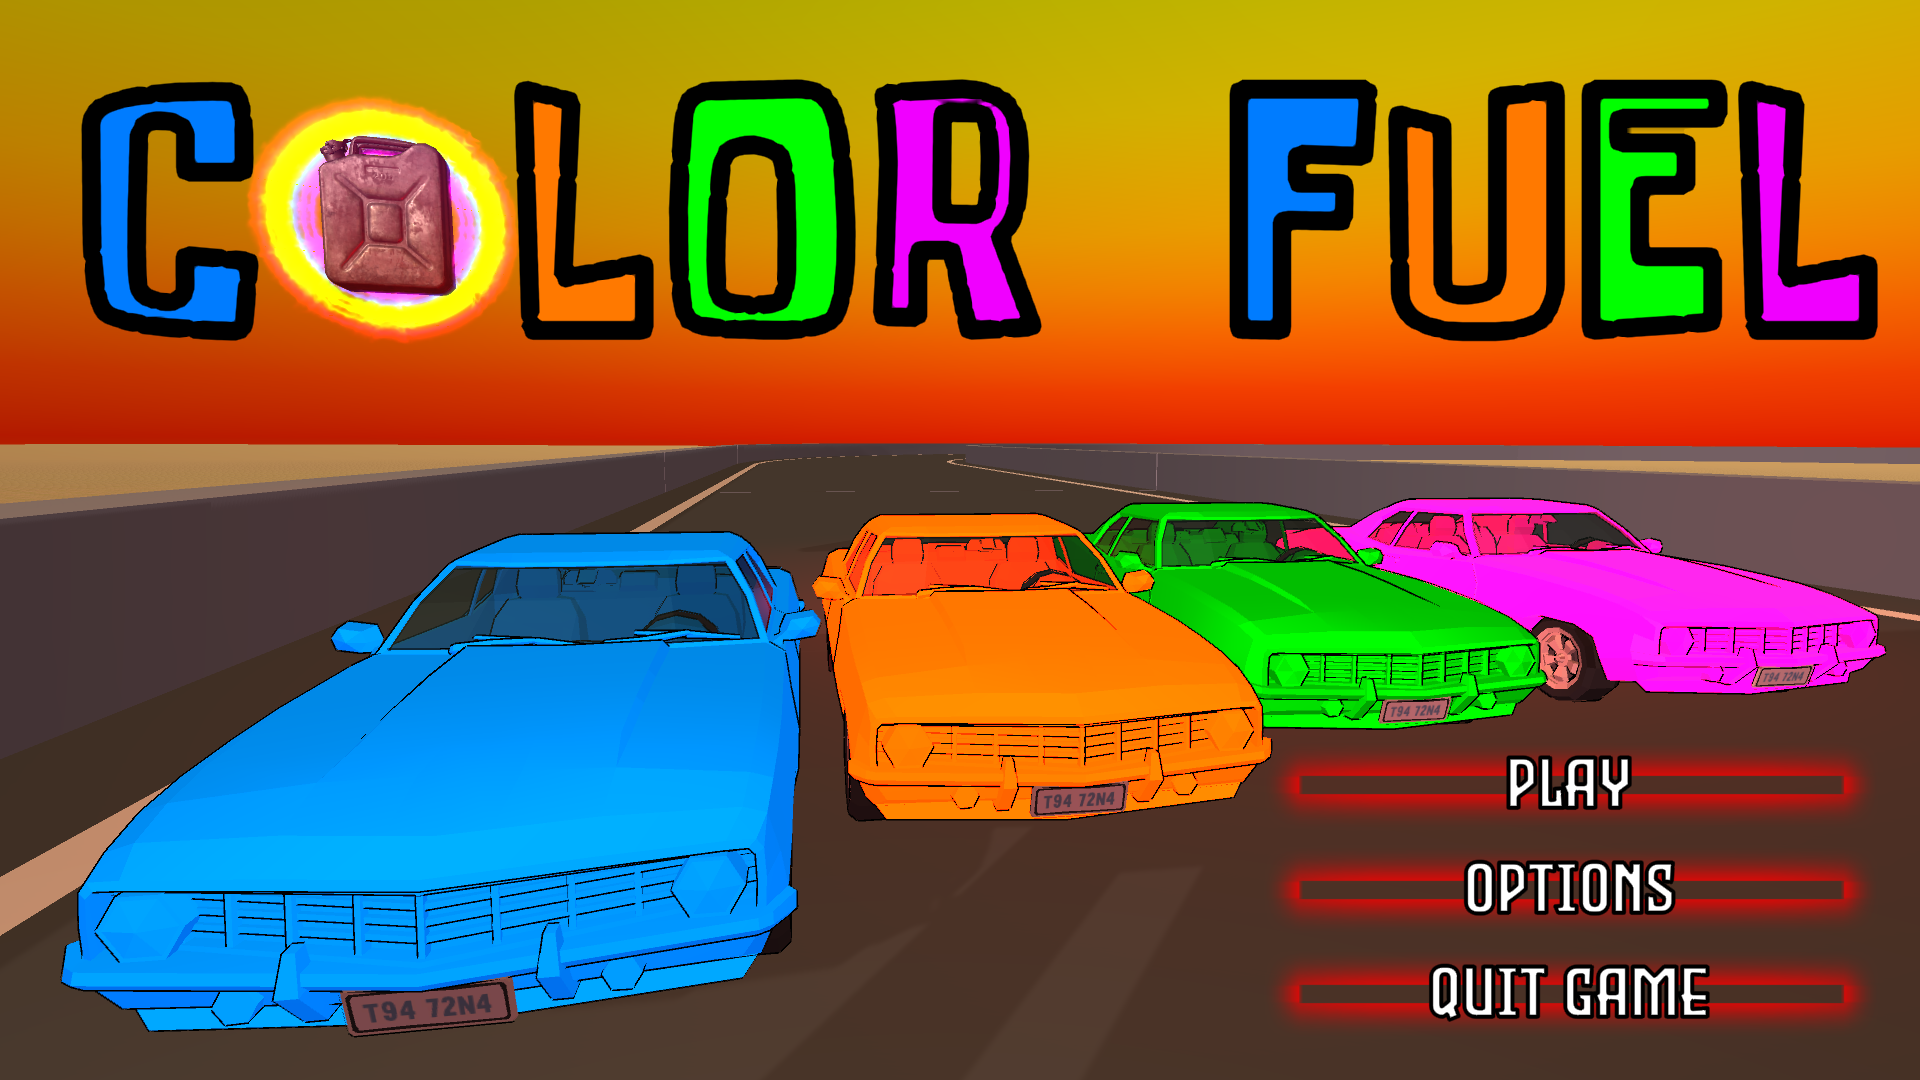 Color Fuel